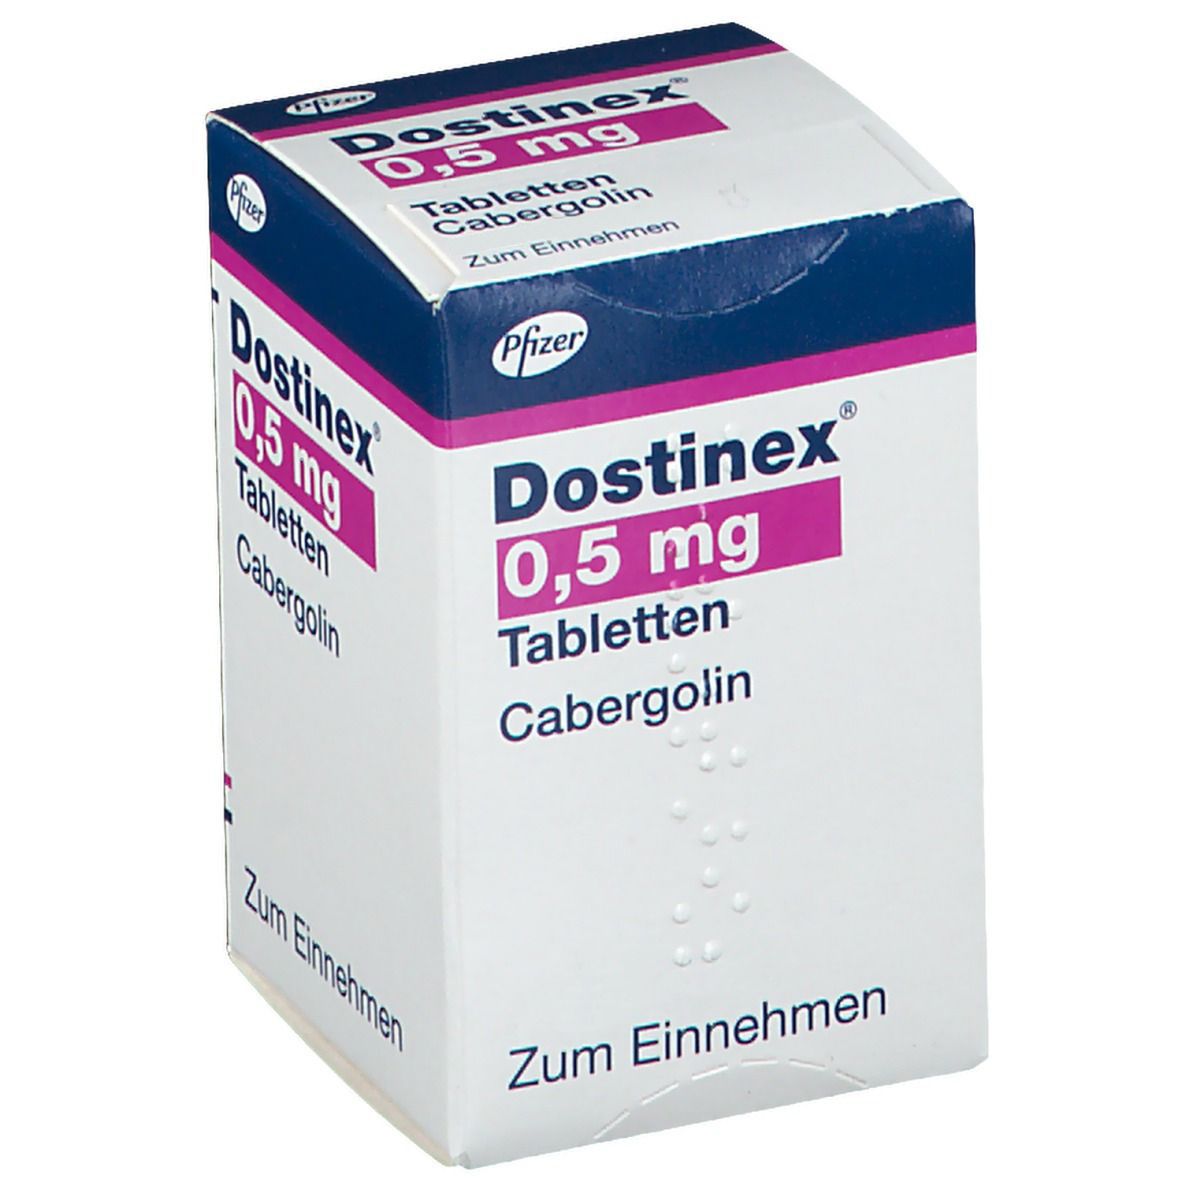 Dostinex® 0,5 mg